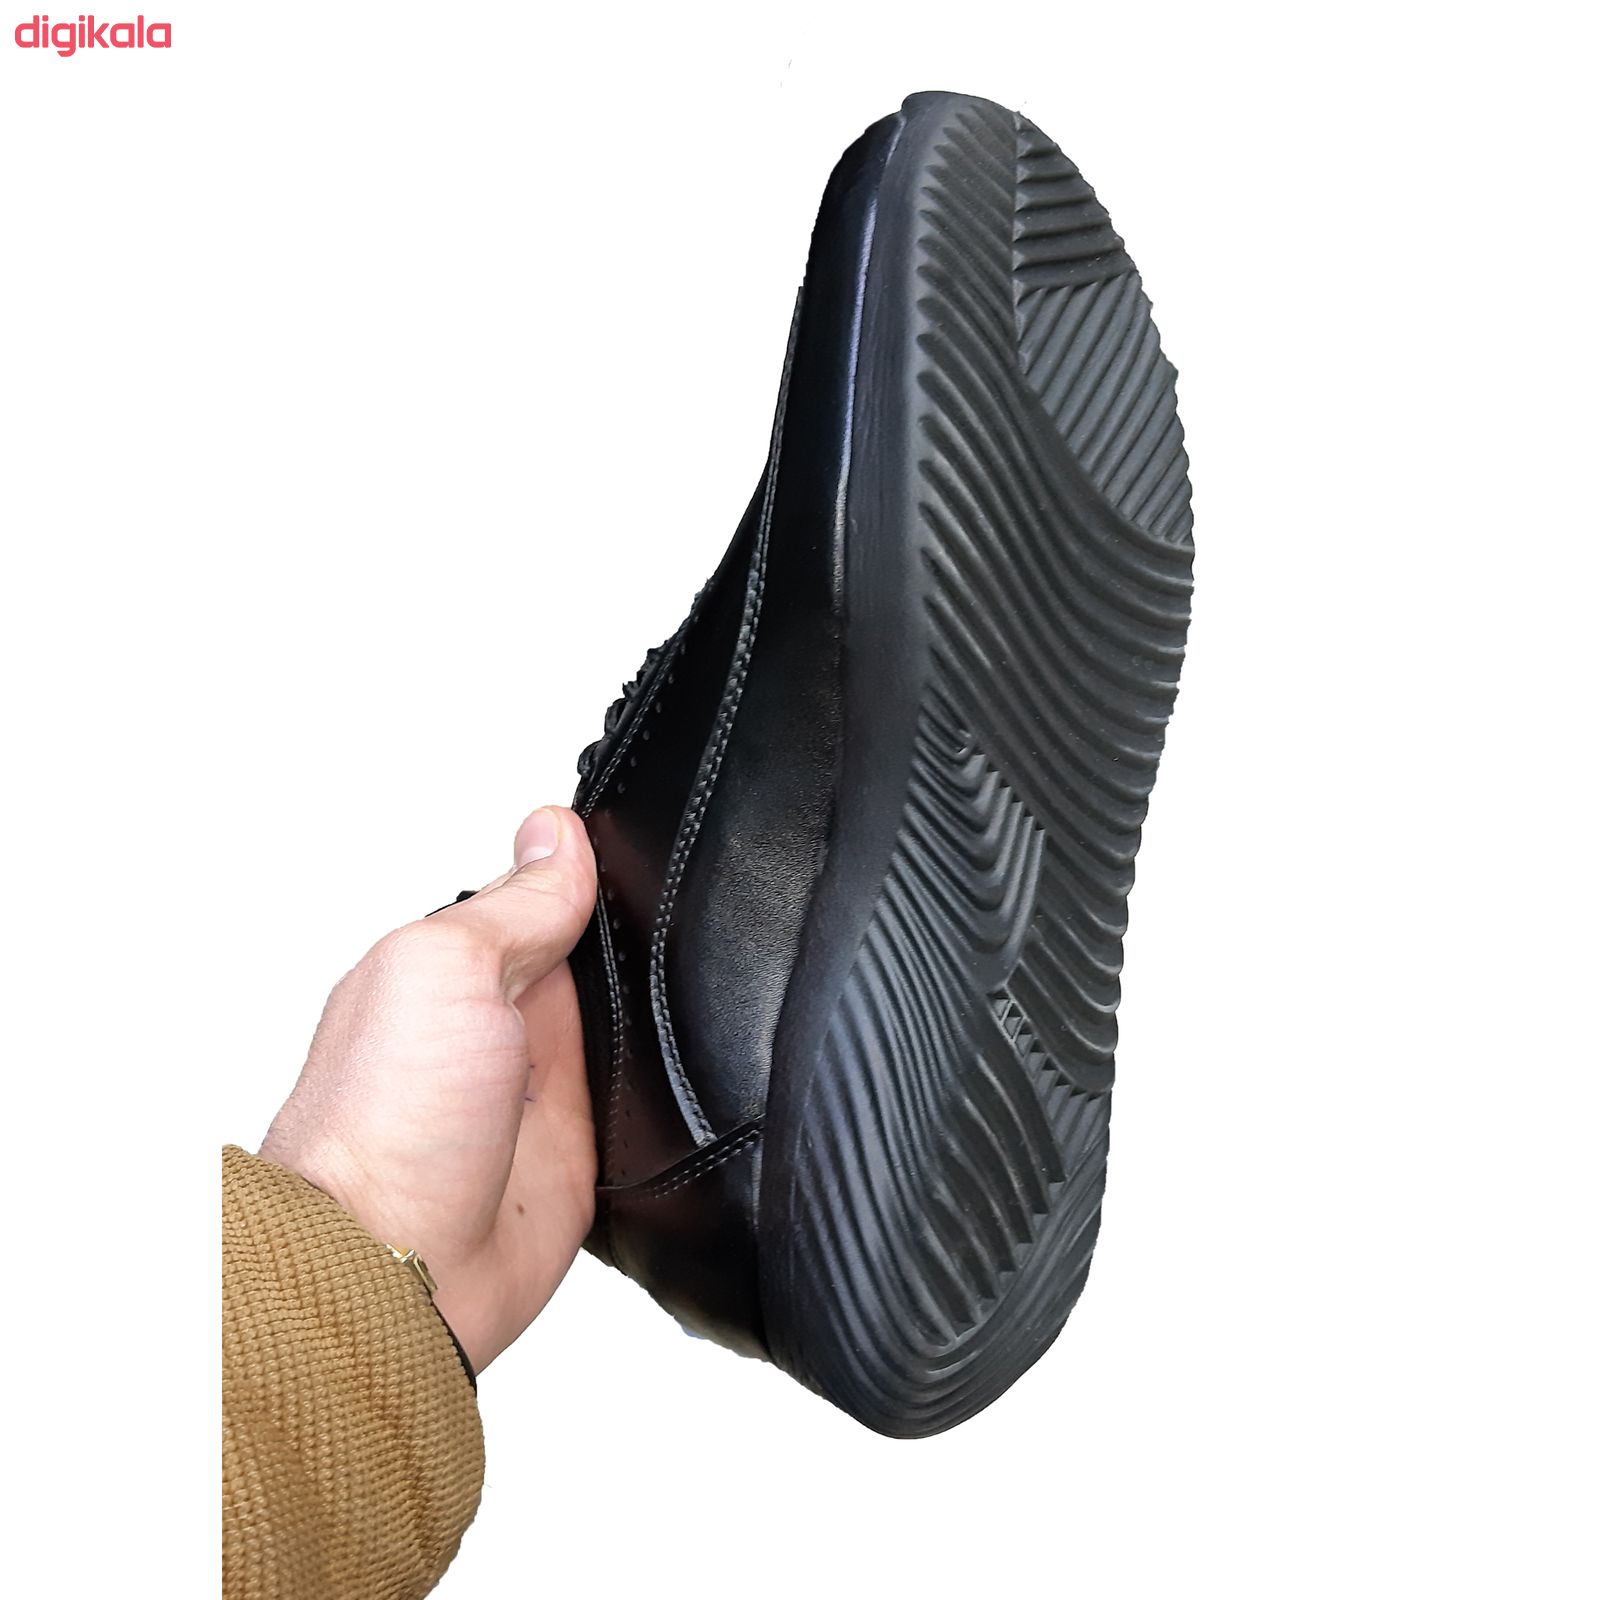  خرید اینترنتی با تخفیف ویژه  کفش طبی مردانه مدل F 965